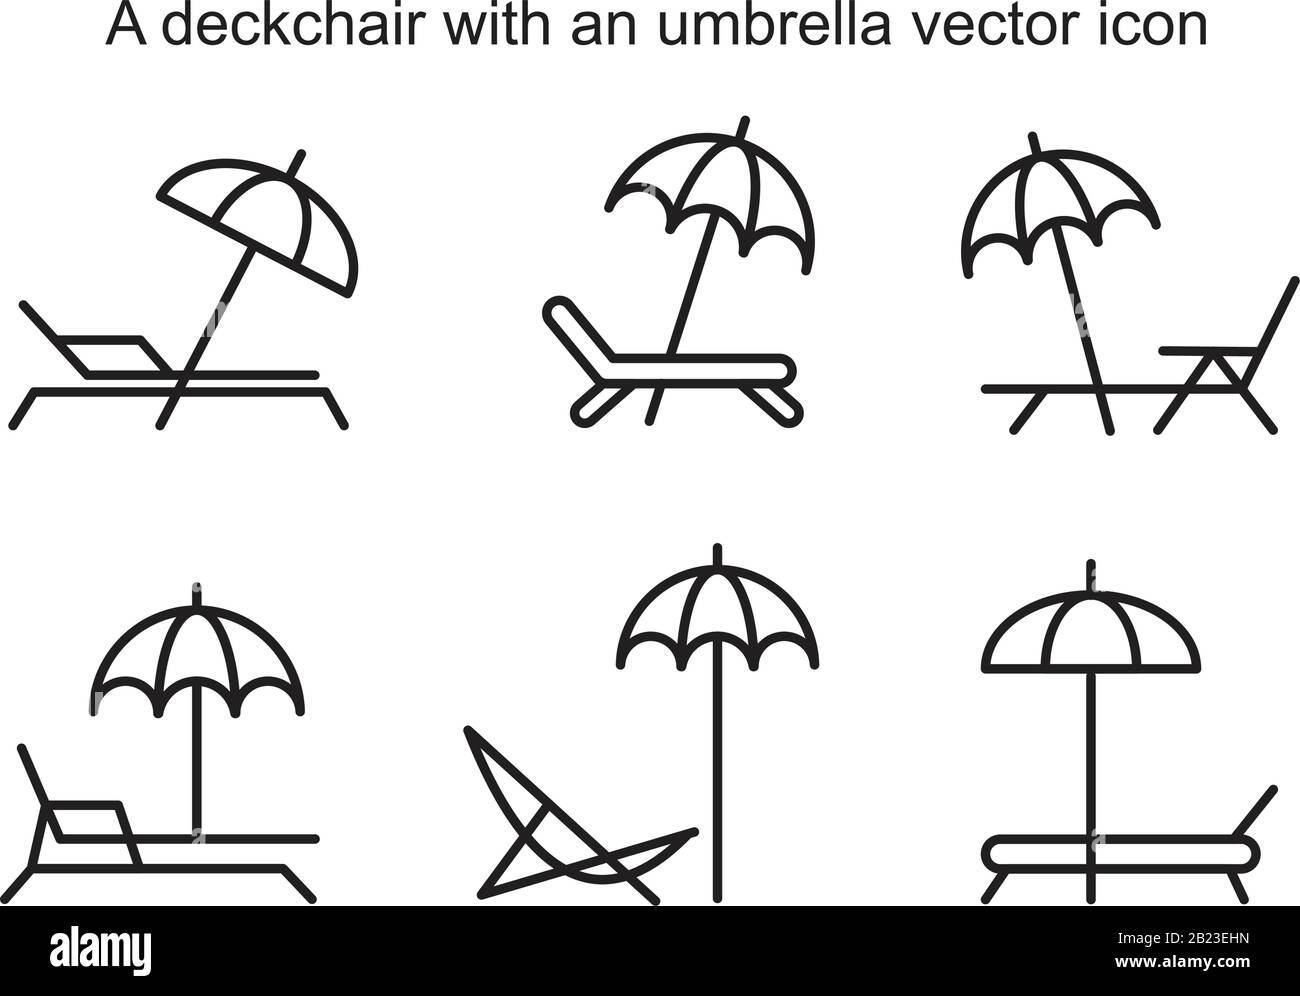 Una sedia a sdraio con un modello di icona vettoriale ombrello colore nero modificabile. Sedia a sdraio con icona a forma di vettore ombrello immagine vettoriale piatta per g Illustrazione Vettoriale